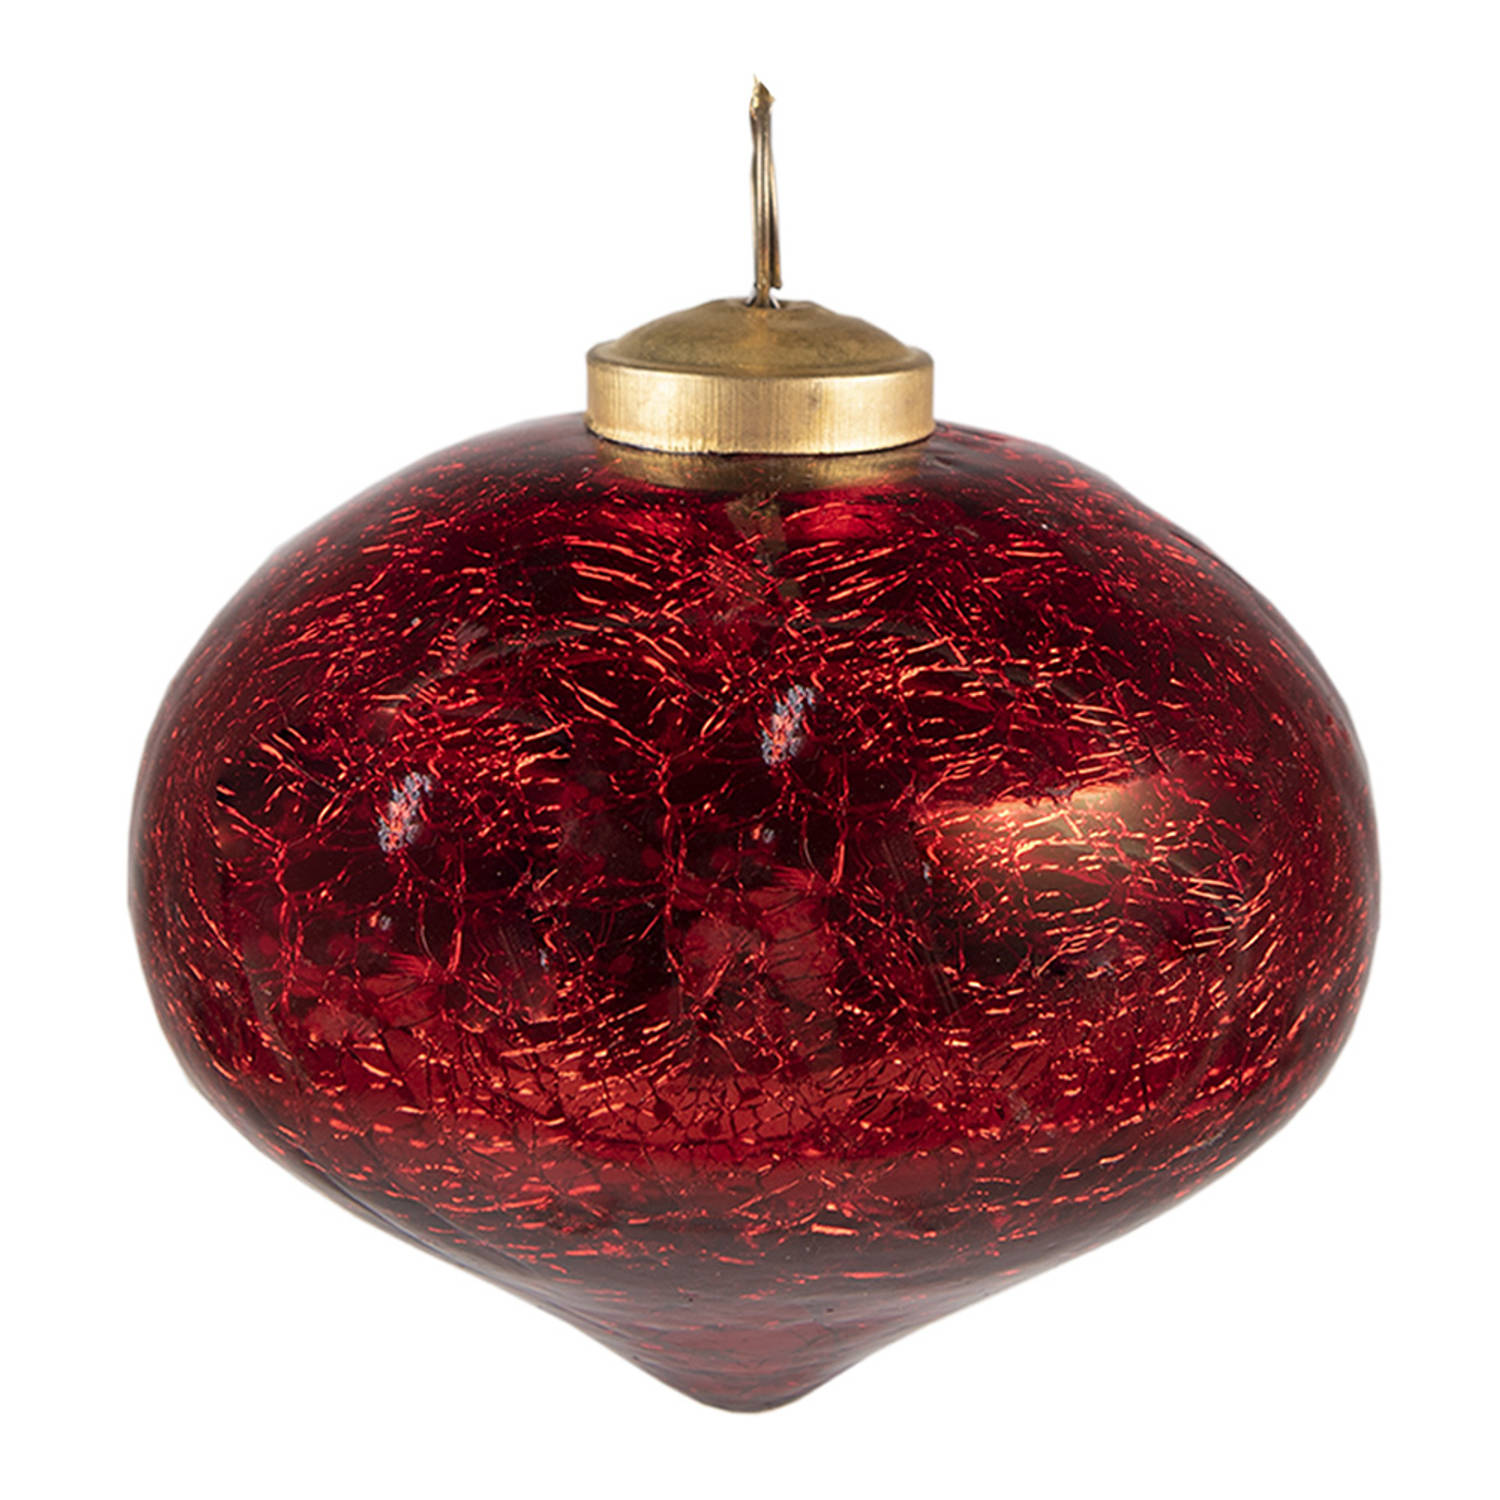 HAES DECO - Kerstbal - Formaat Ø 9x9 cm - Kleur Rood - Materiaal Glas - Kerstversiering, Kerstdecoratie, Decoratie Hanger, Kerstboomversiering